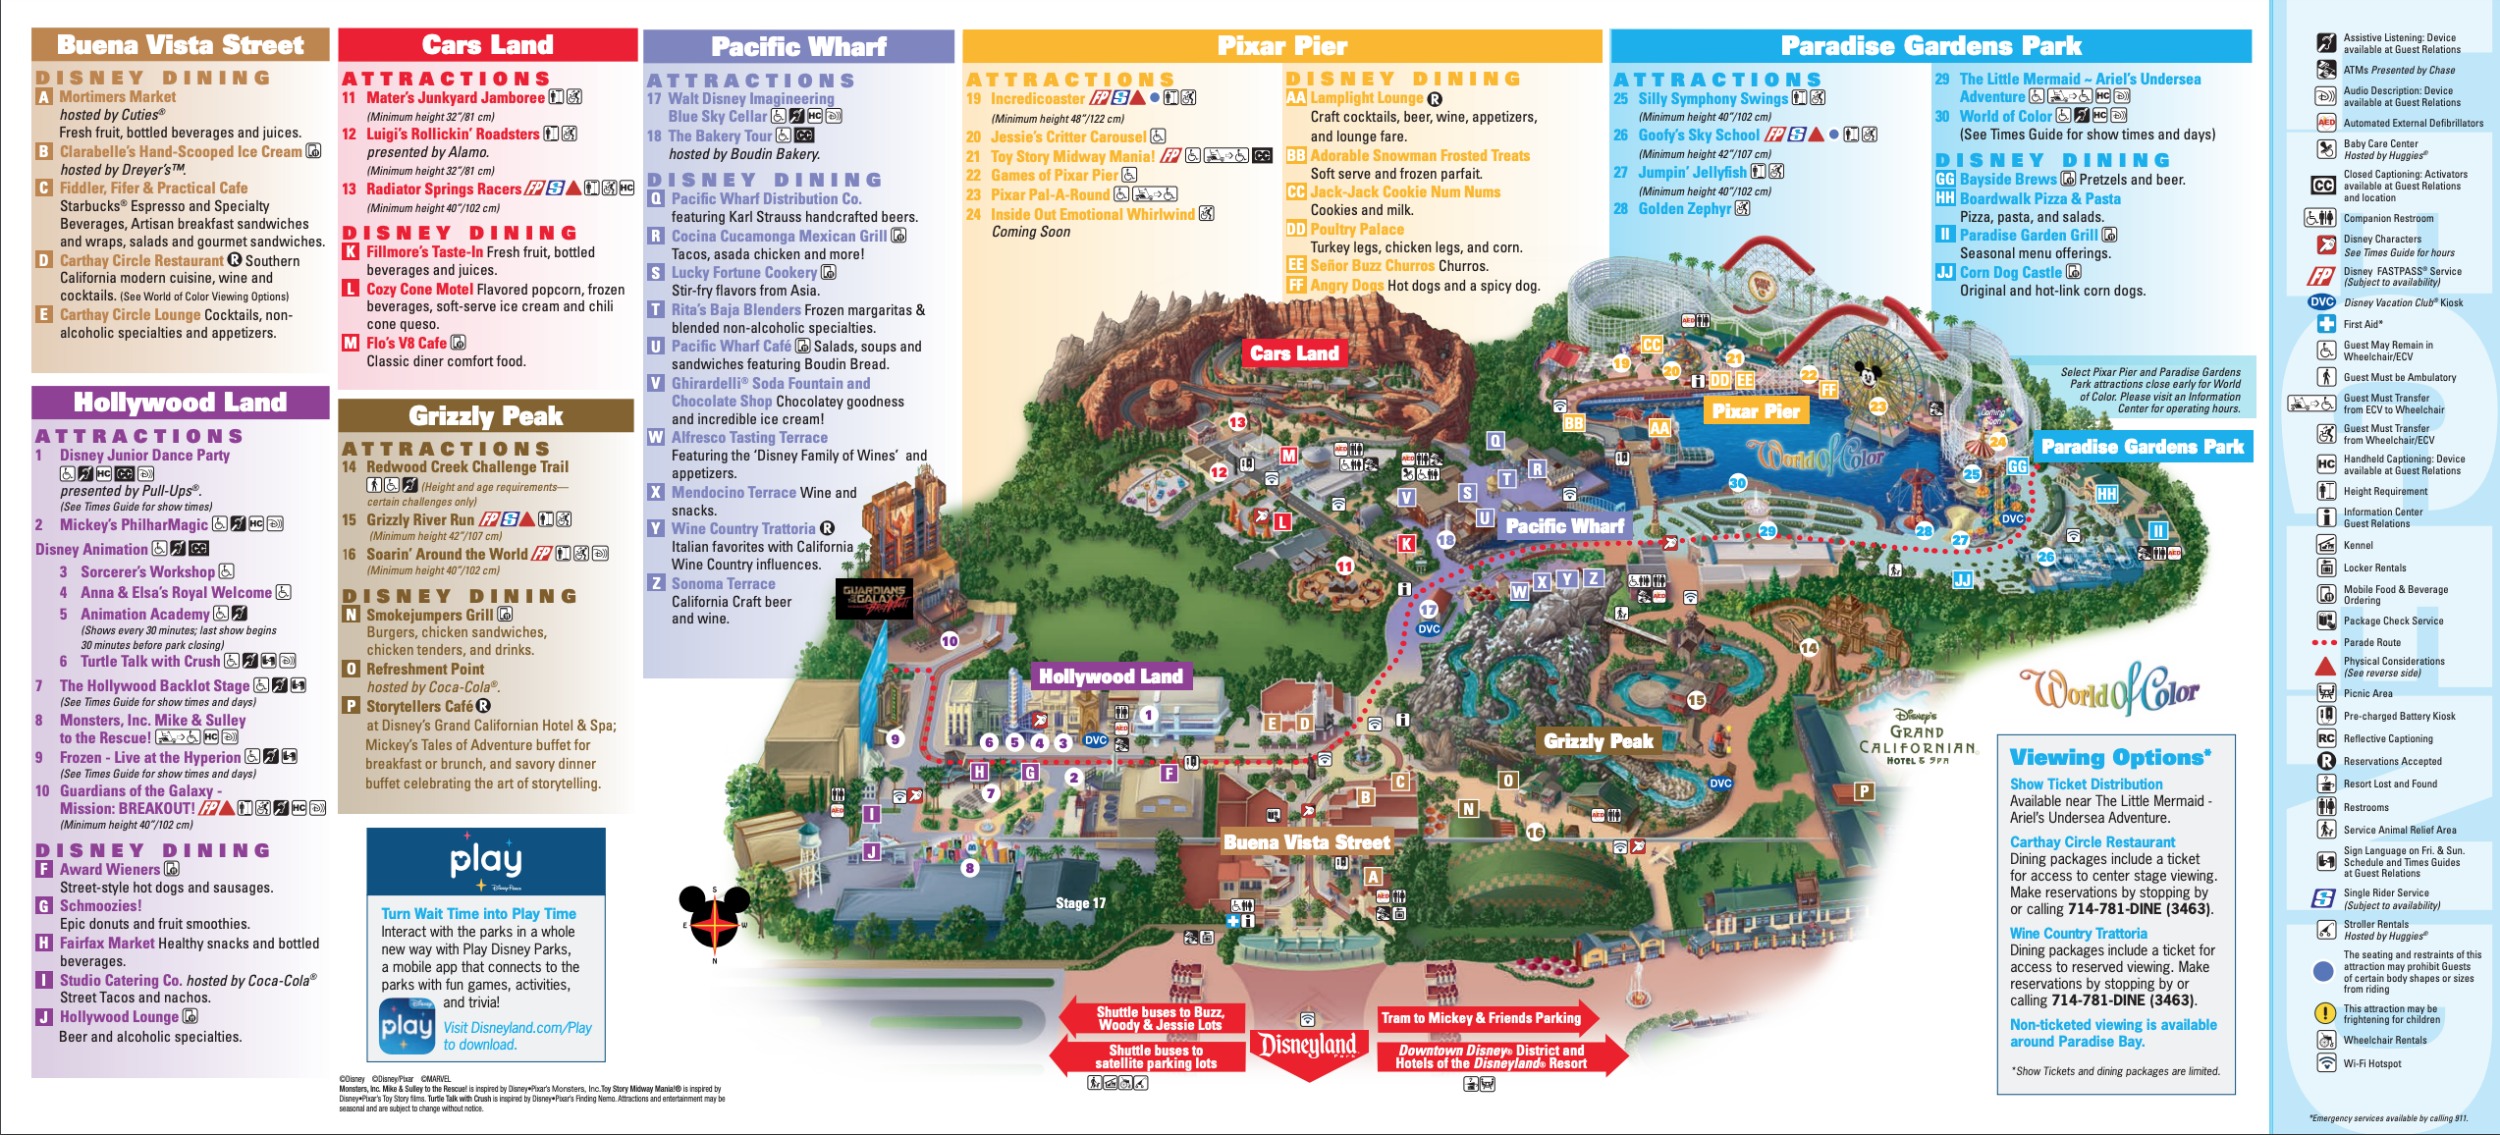 Disneyland Park Map in California, Map of Disneyland